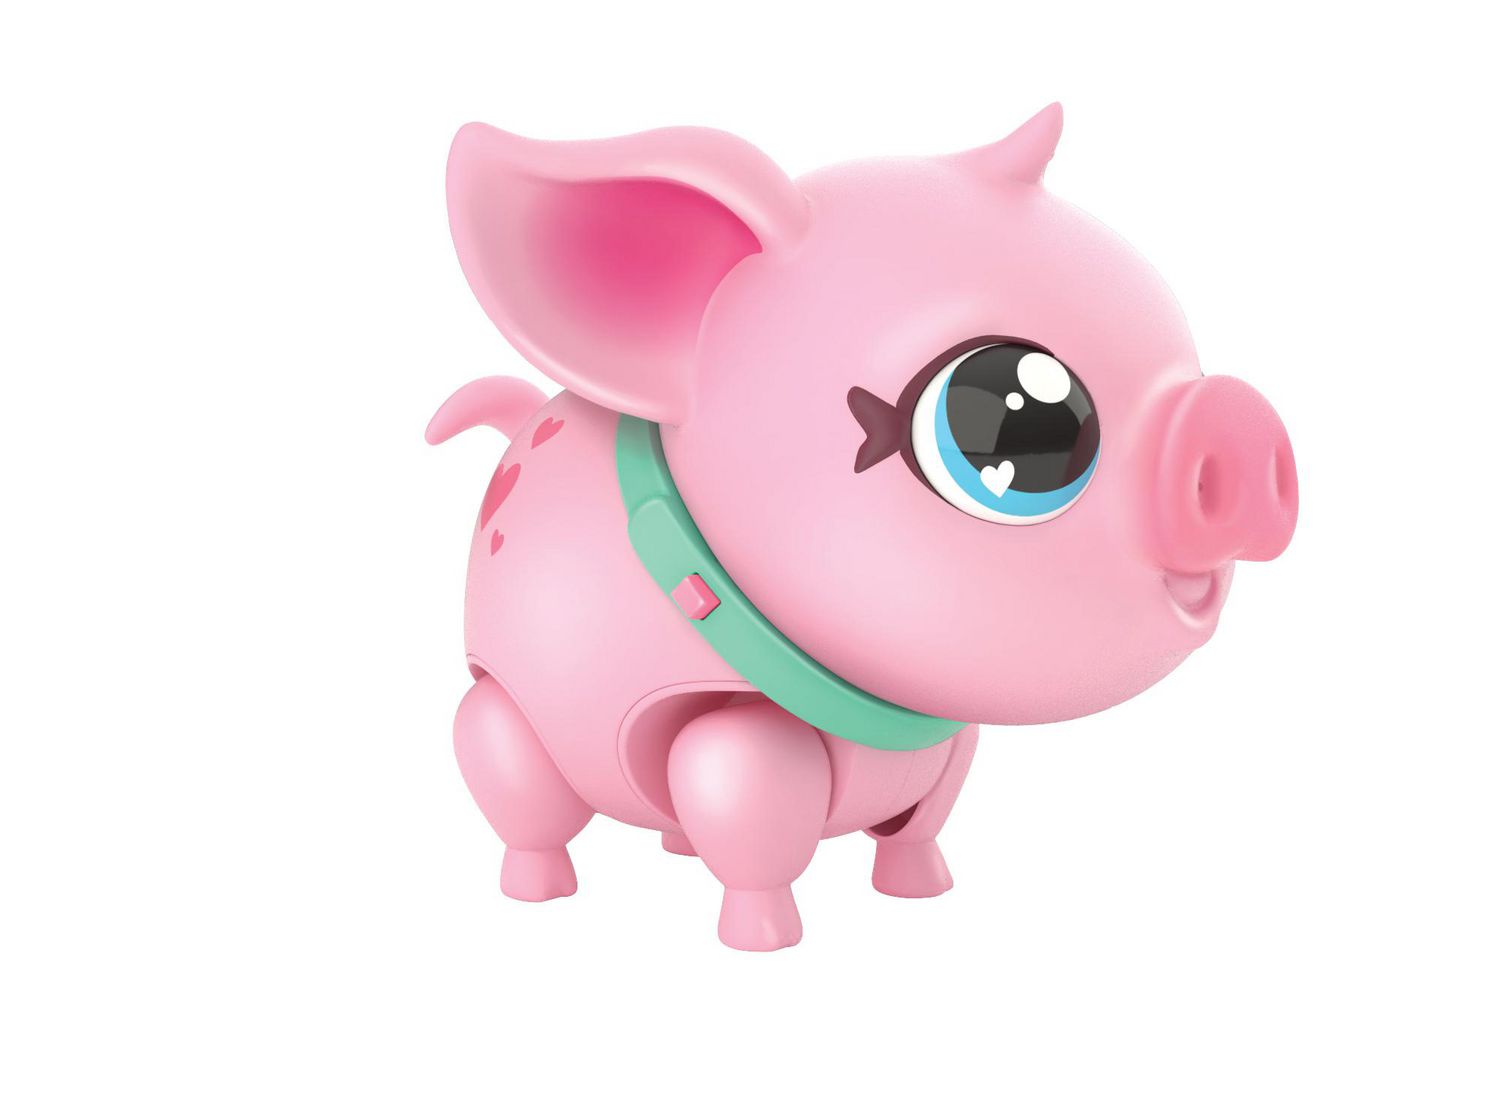 Le cochon miniature, un animal de compagnie qui gagne en popularité [VIDÉO]